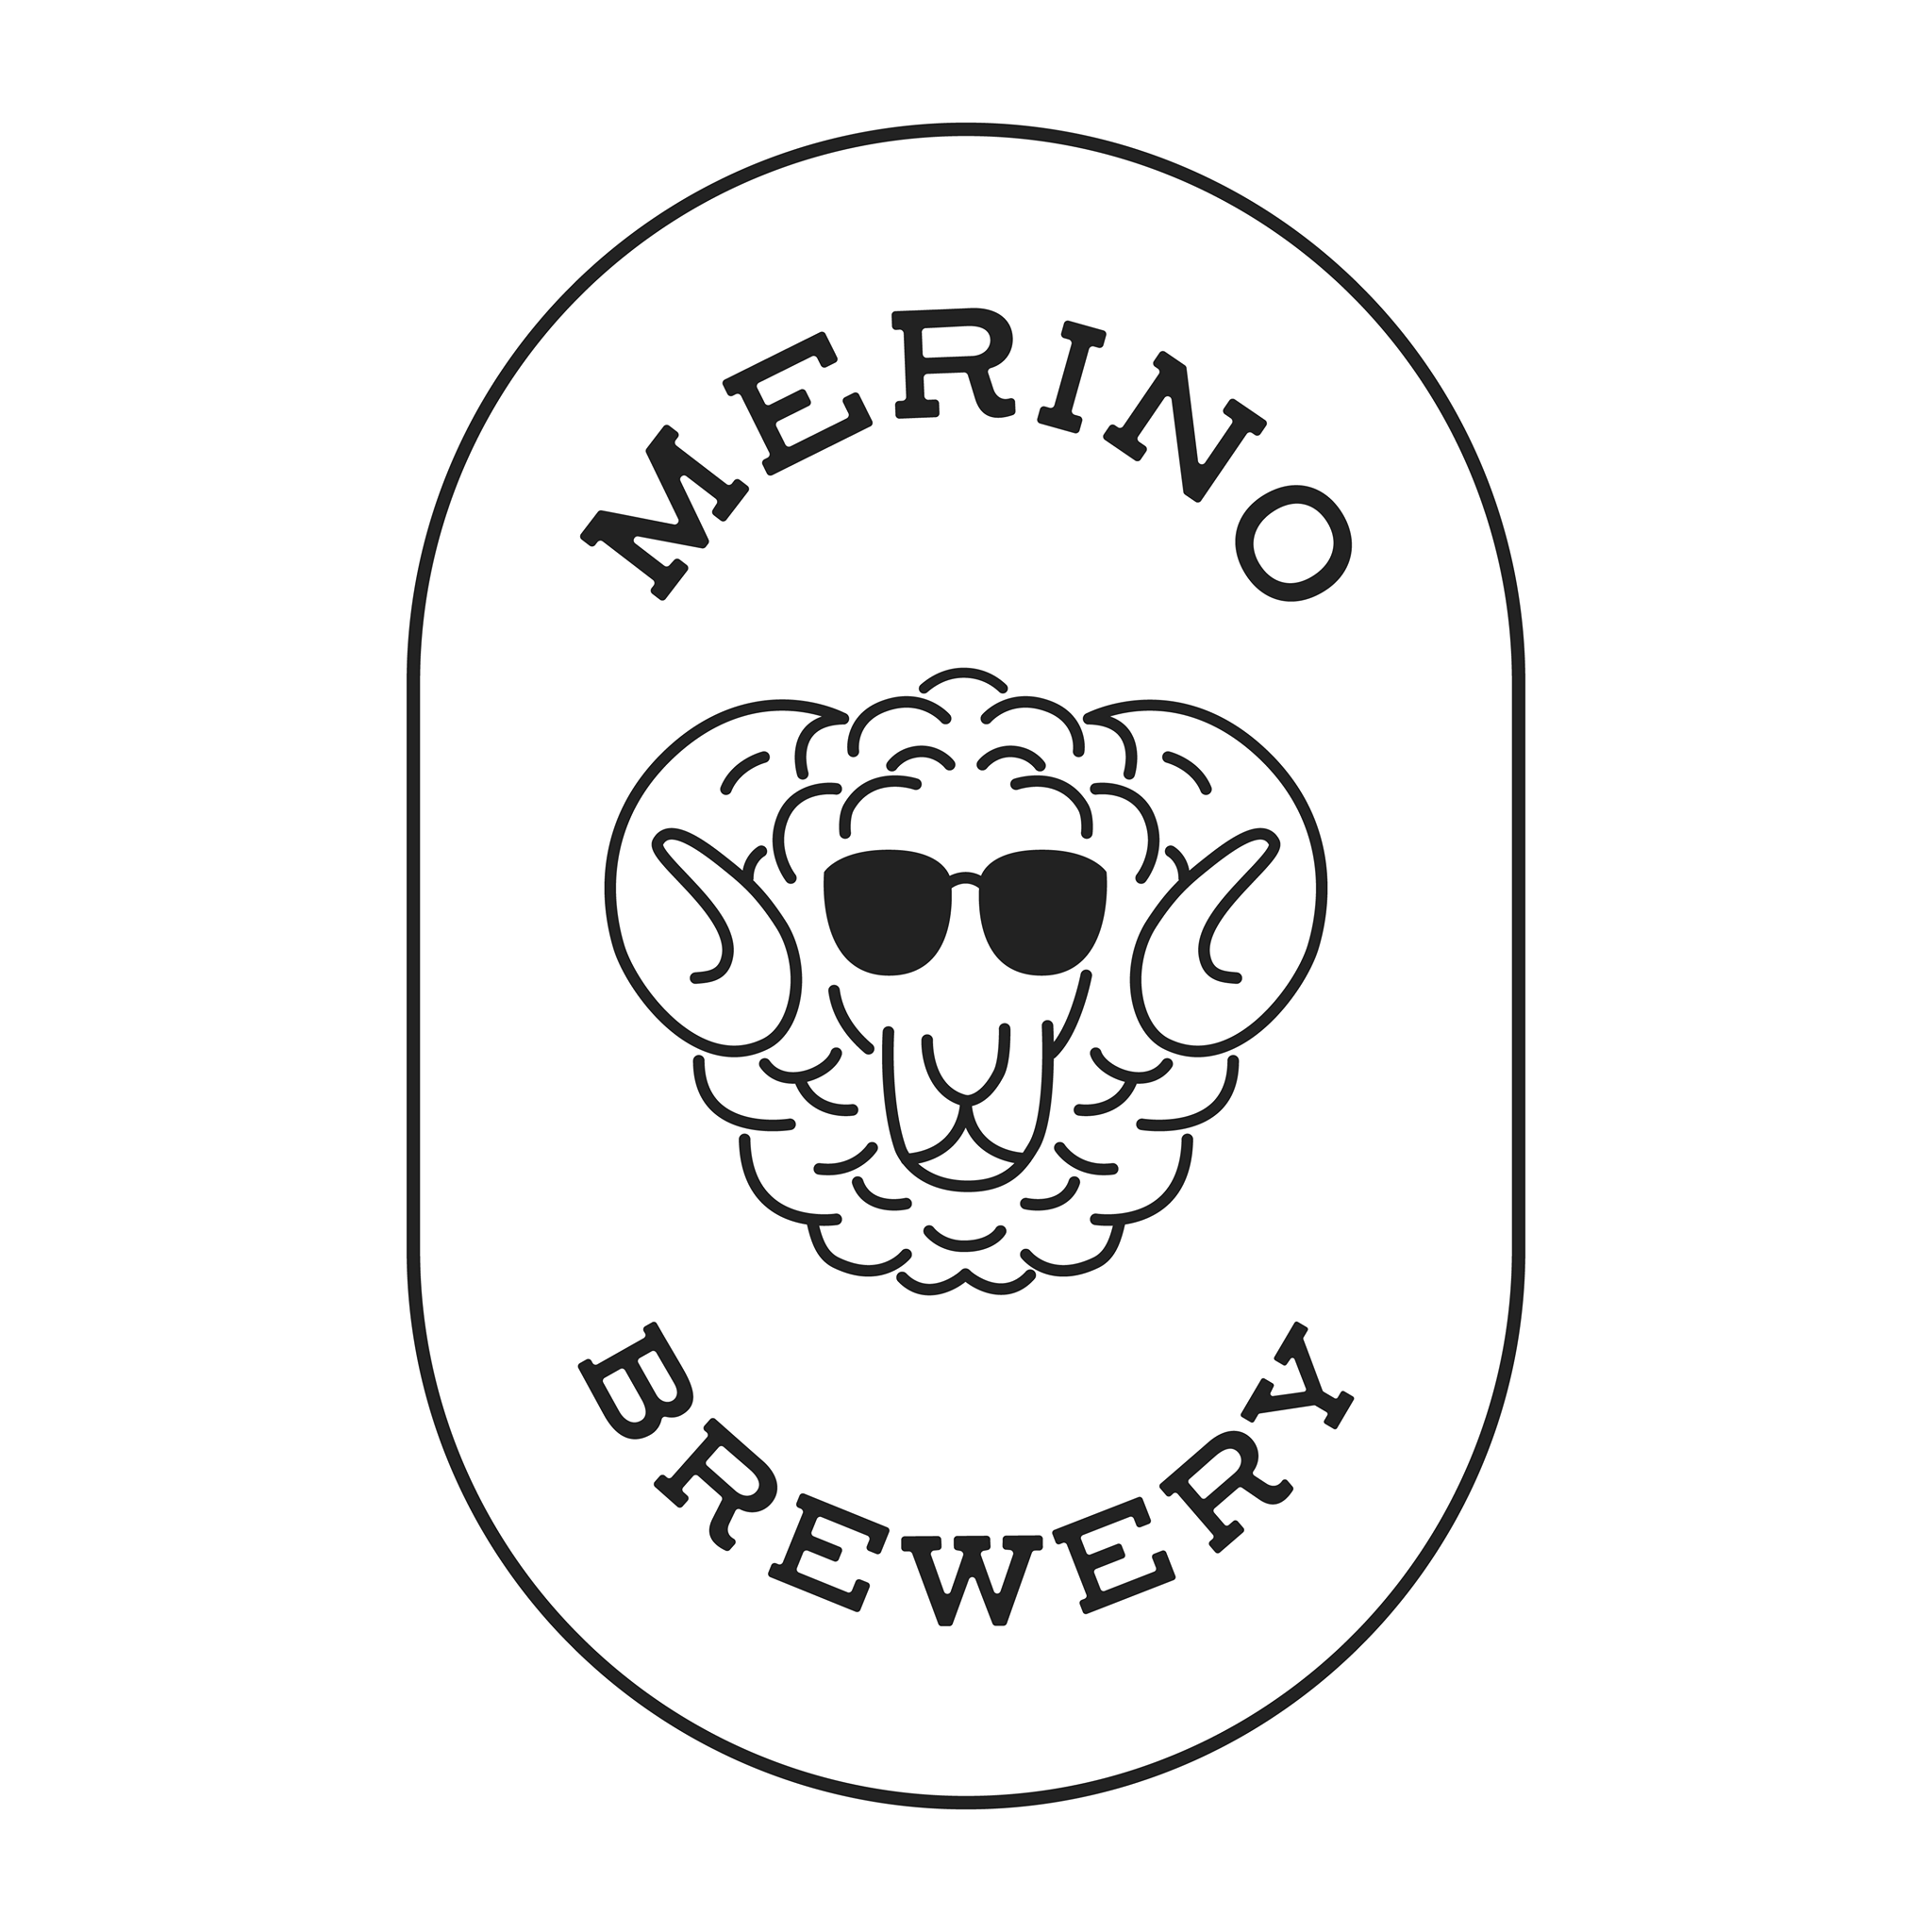 Merino Brewery